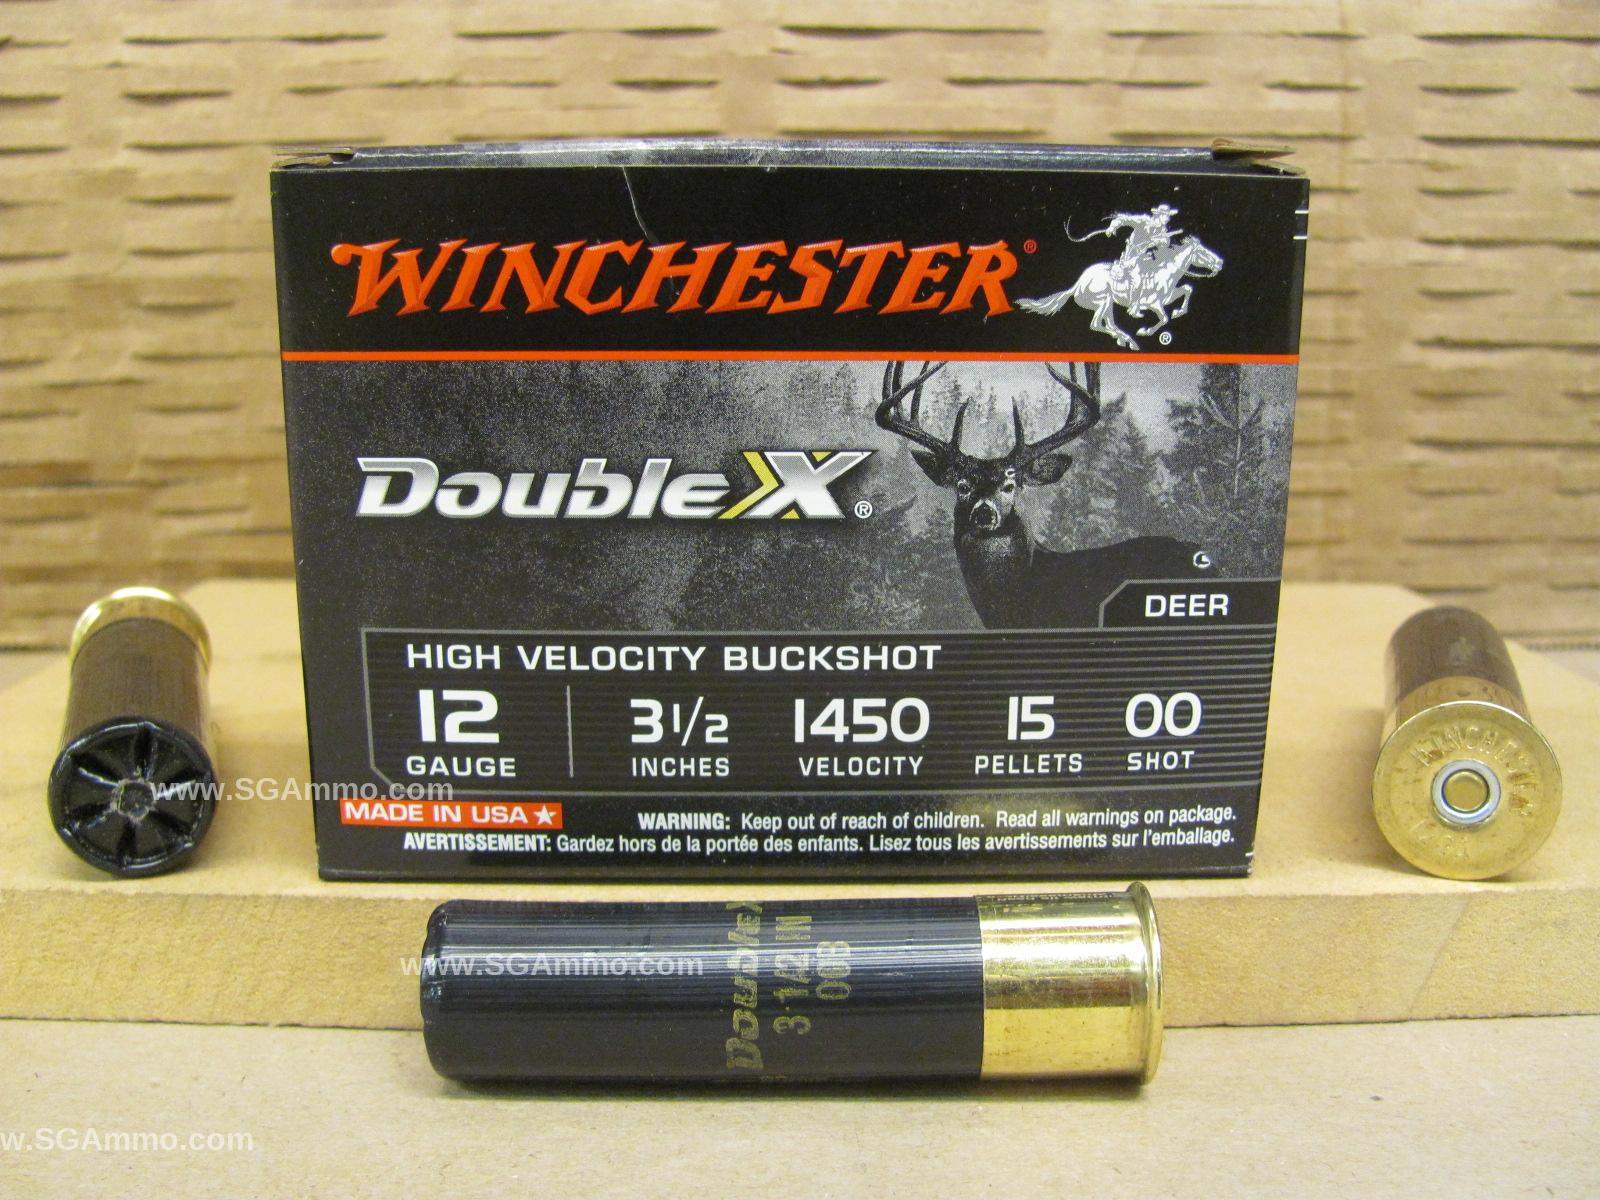 250 Round Case - 12 Gauge 3.5 Inch 15 Pellet 00 Buck Winchester High Velocity Buckshot Ammo - SB12L00